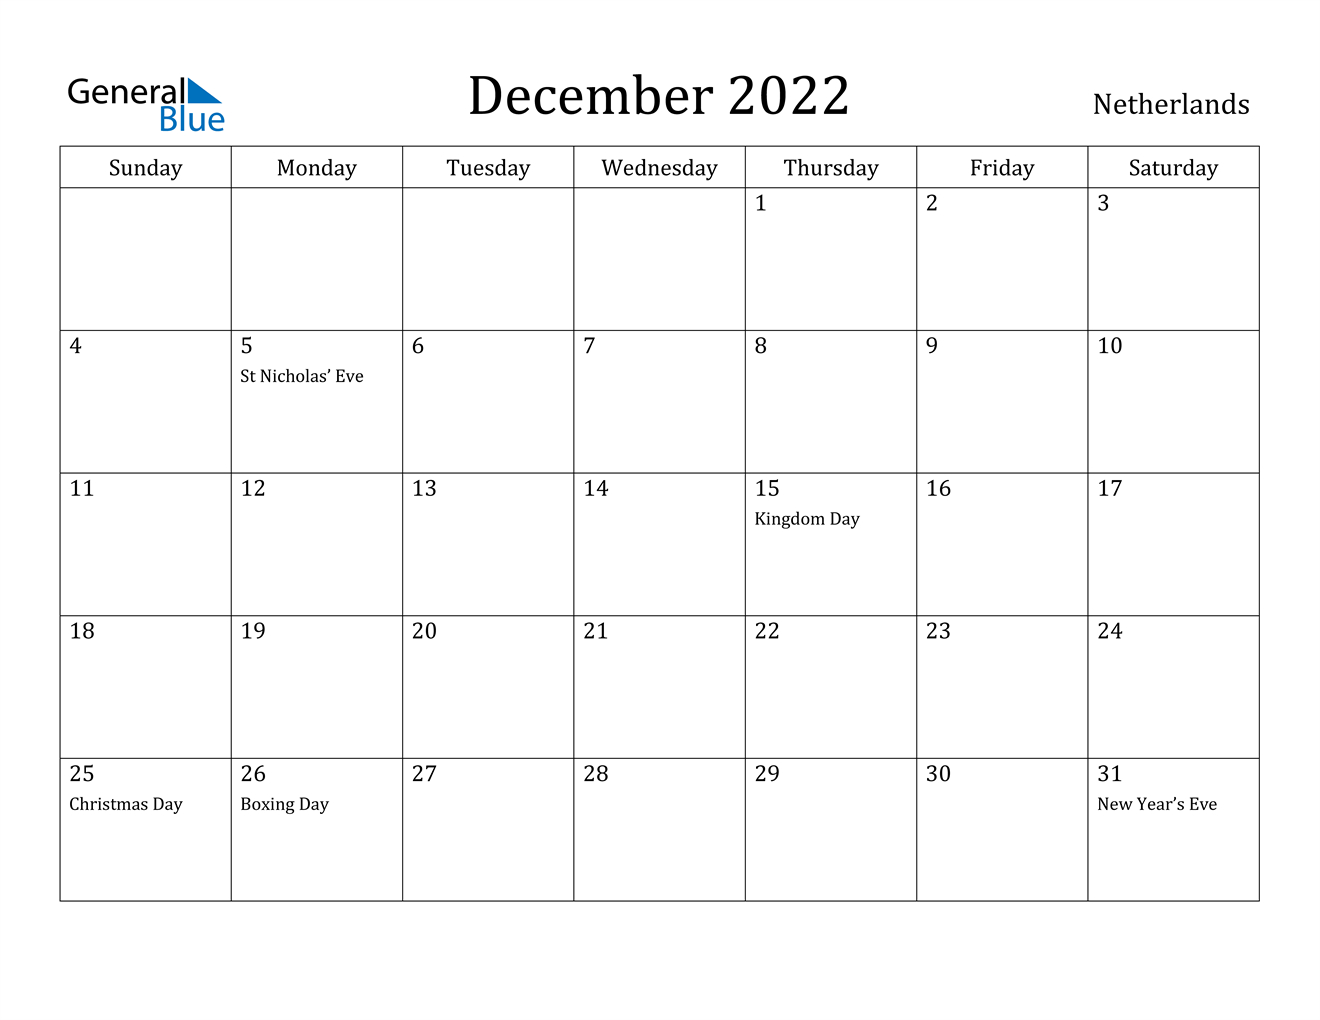 December 2022 Calendar - Netherlands